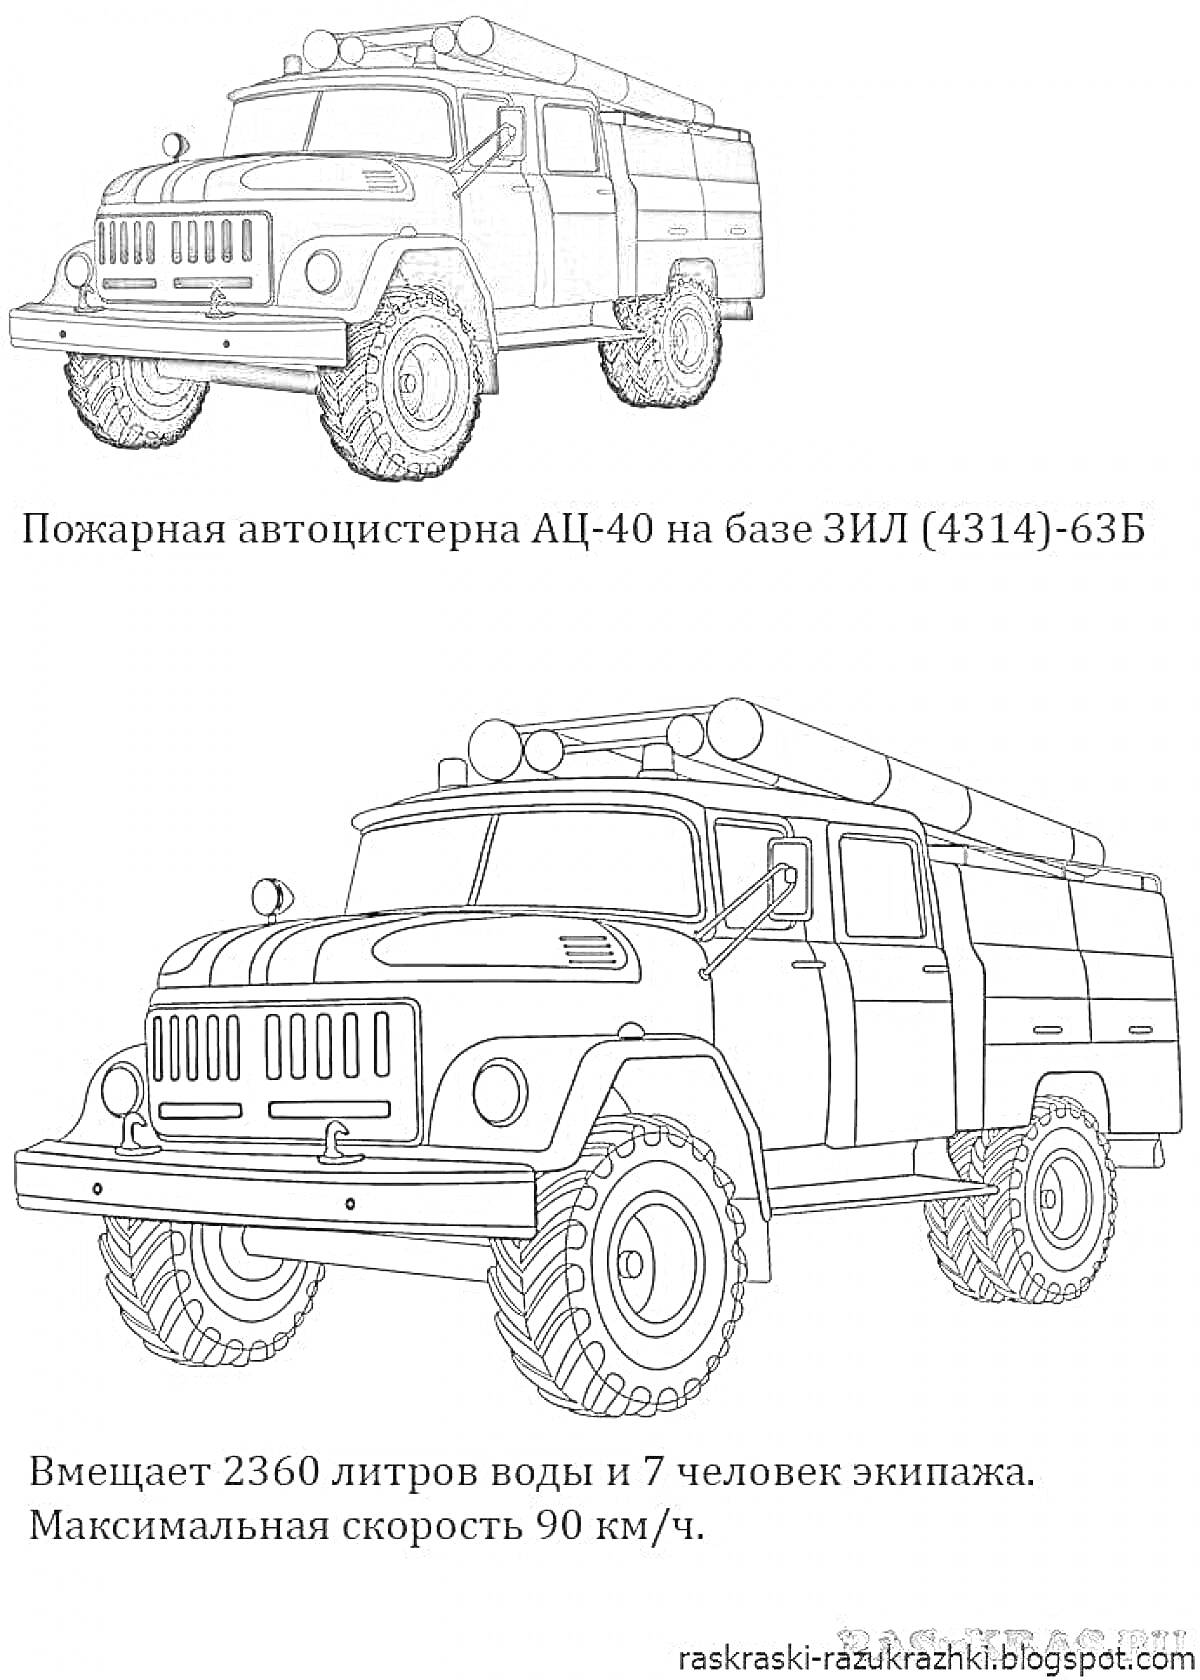 Раскраска Пожарная автоцистерна АЦ-40 на базе ЗИЛ (4314)-63Б